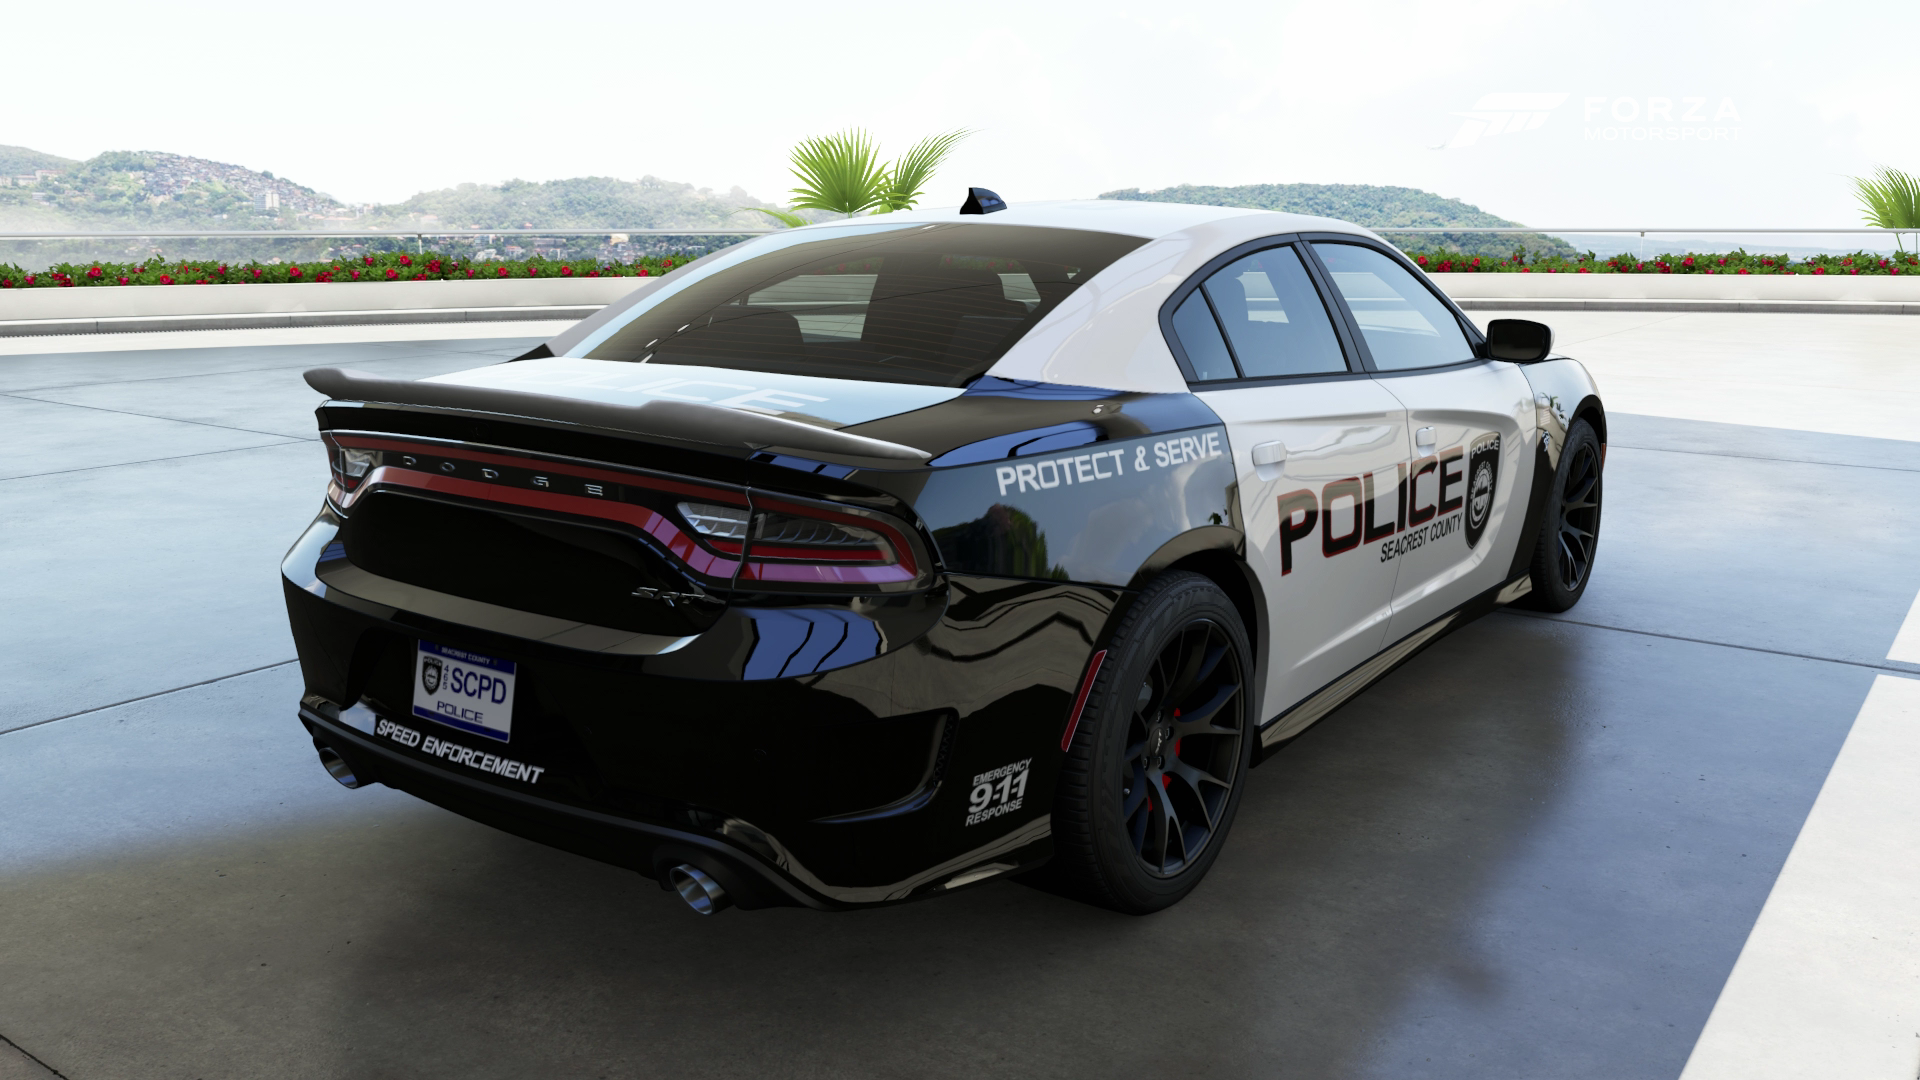 SCPD - 2015 Dodge Charger SRT Hellcat - Back by xboxgamer969 on DeviantArt